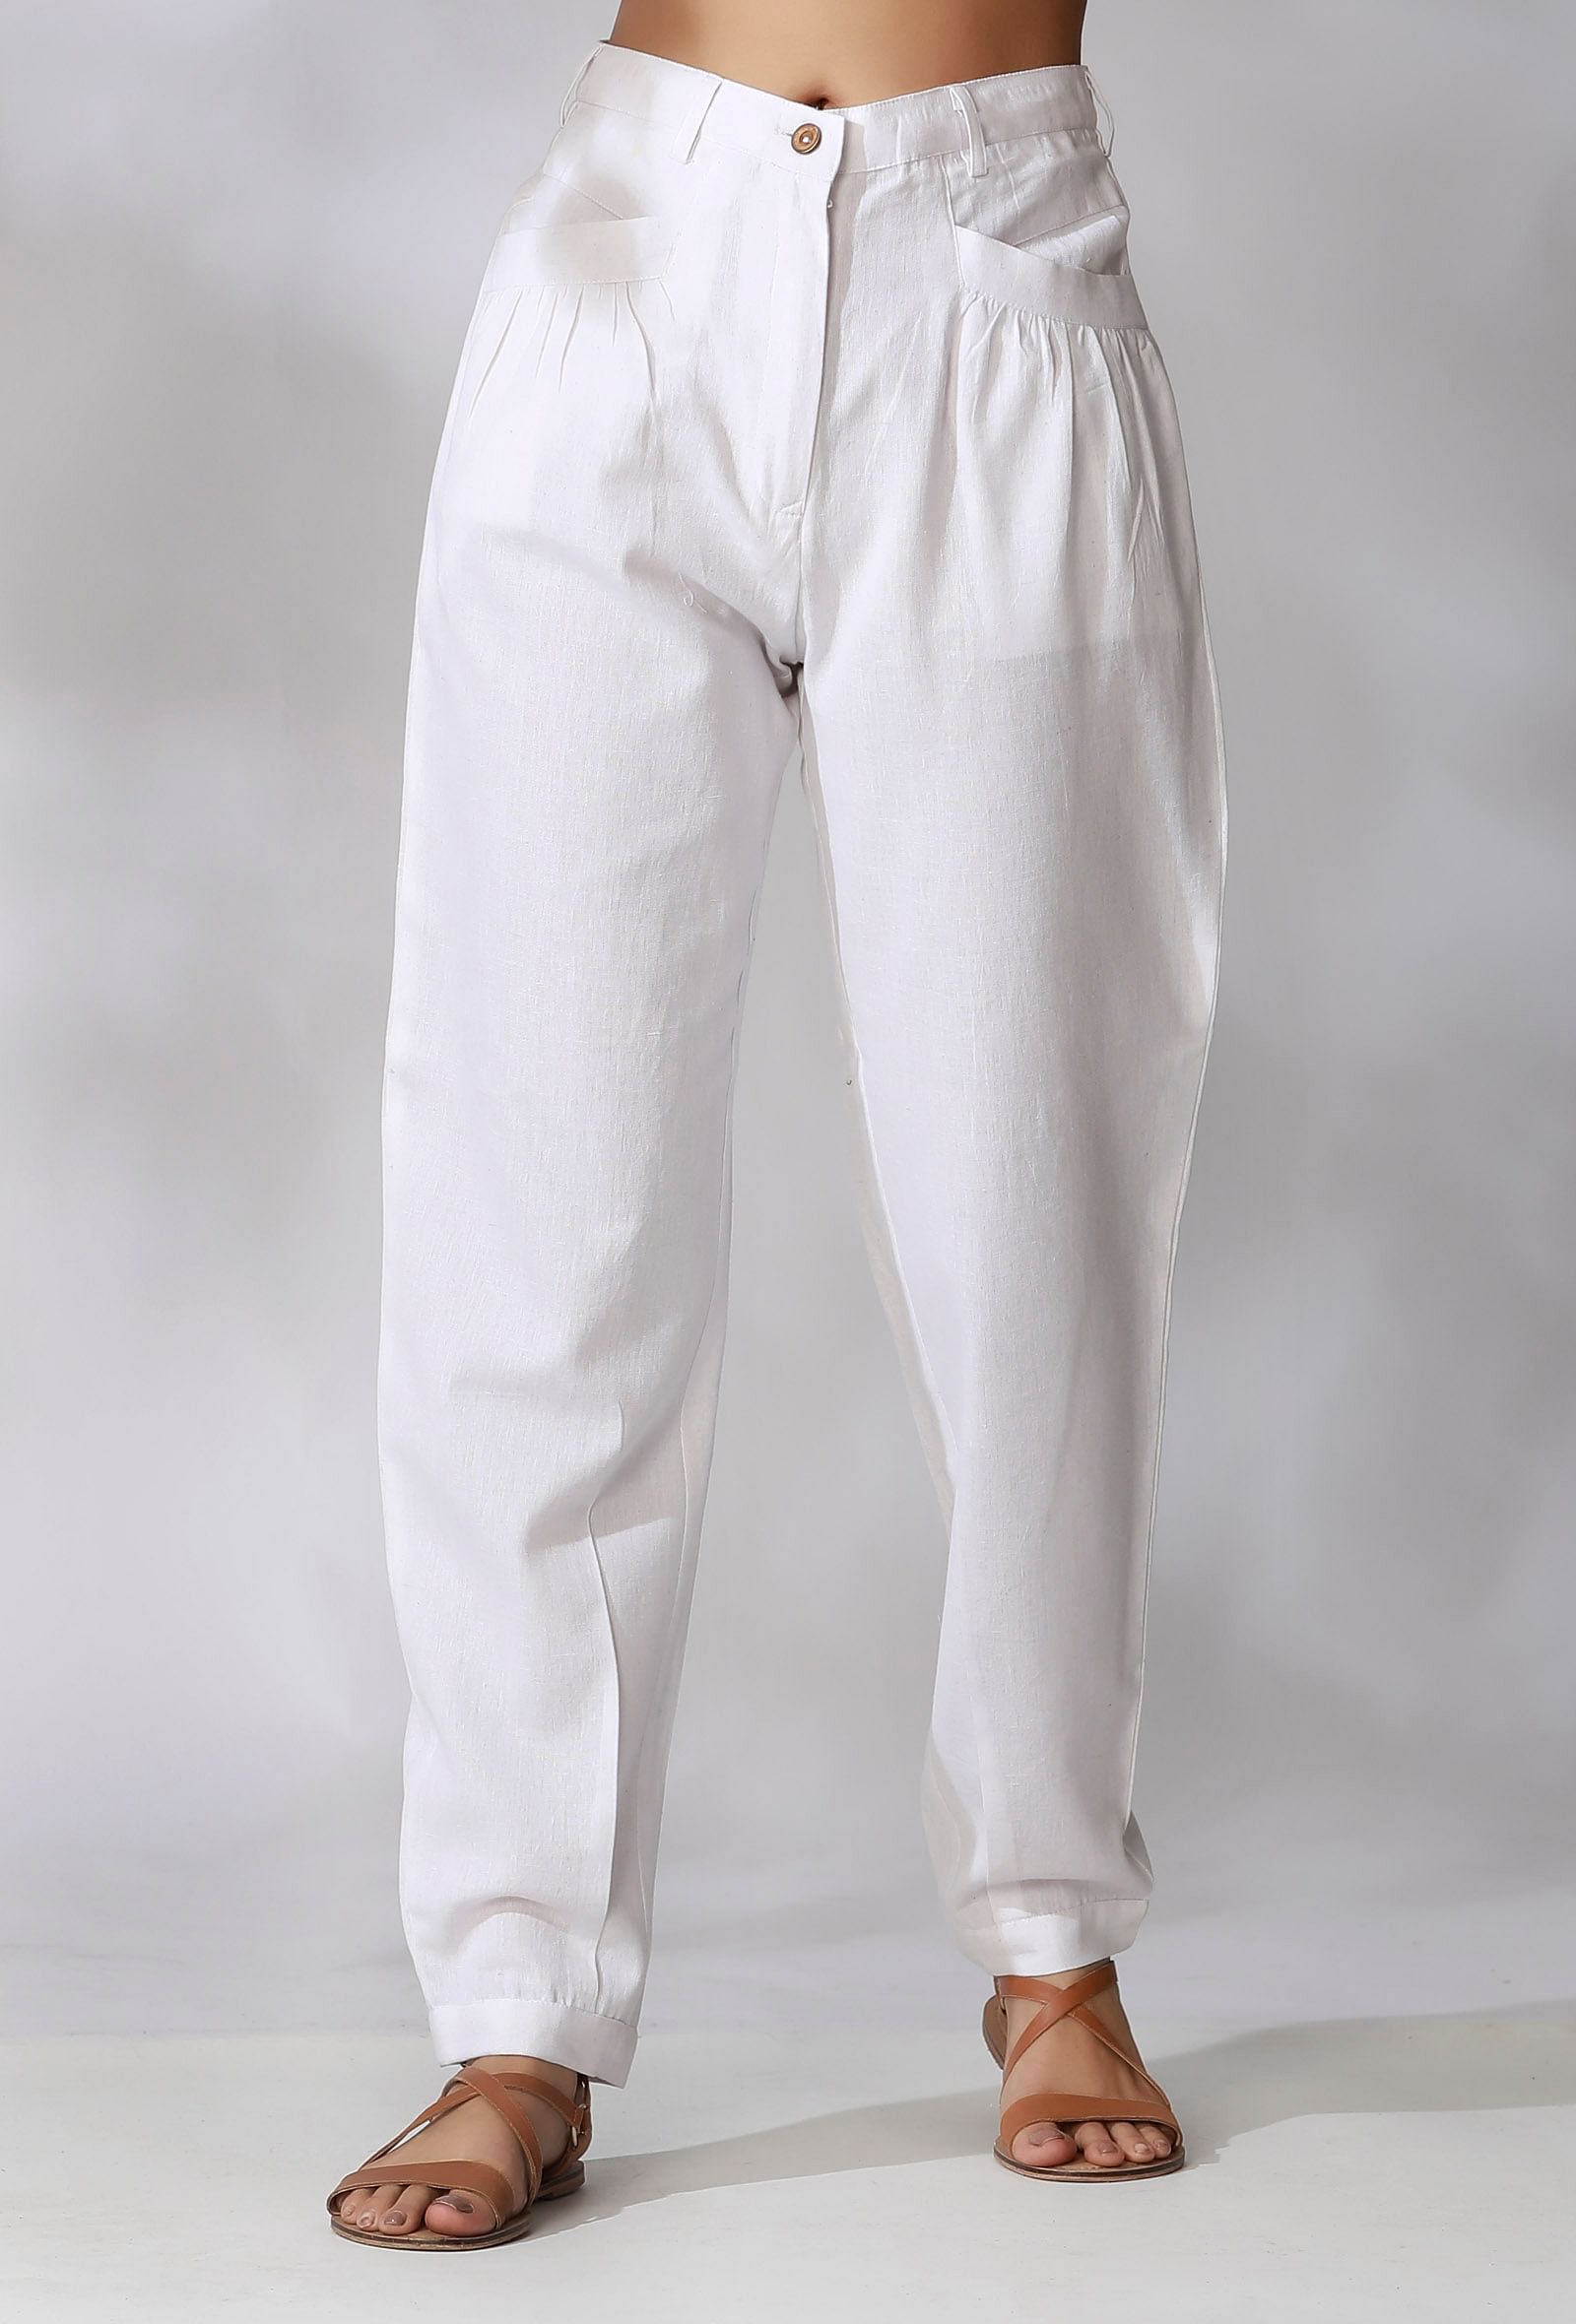 Halogen Slim Fit Men White Trousers - Buy Halogen Slim Fit Men White  Trousers Online at Best Prices in India | Flipkart.com